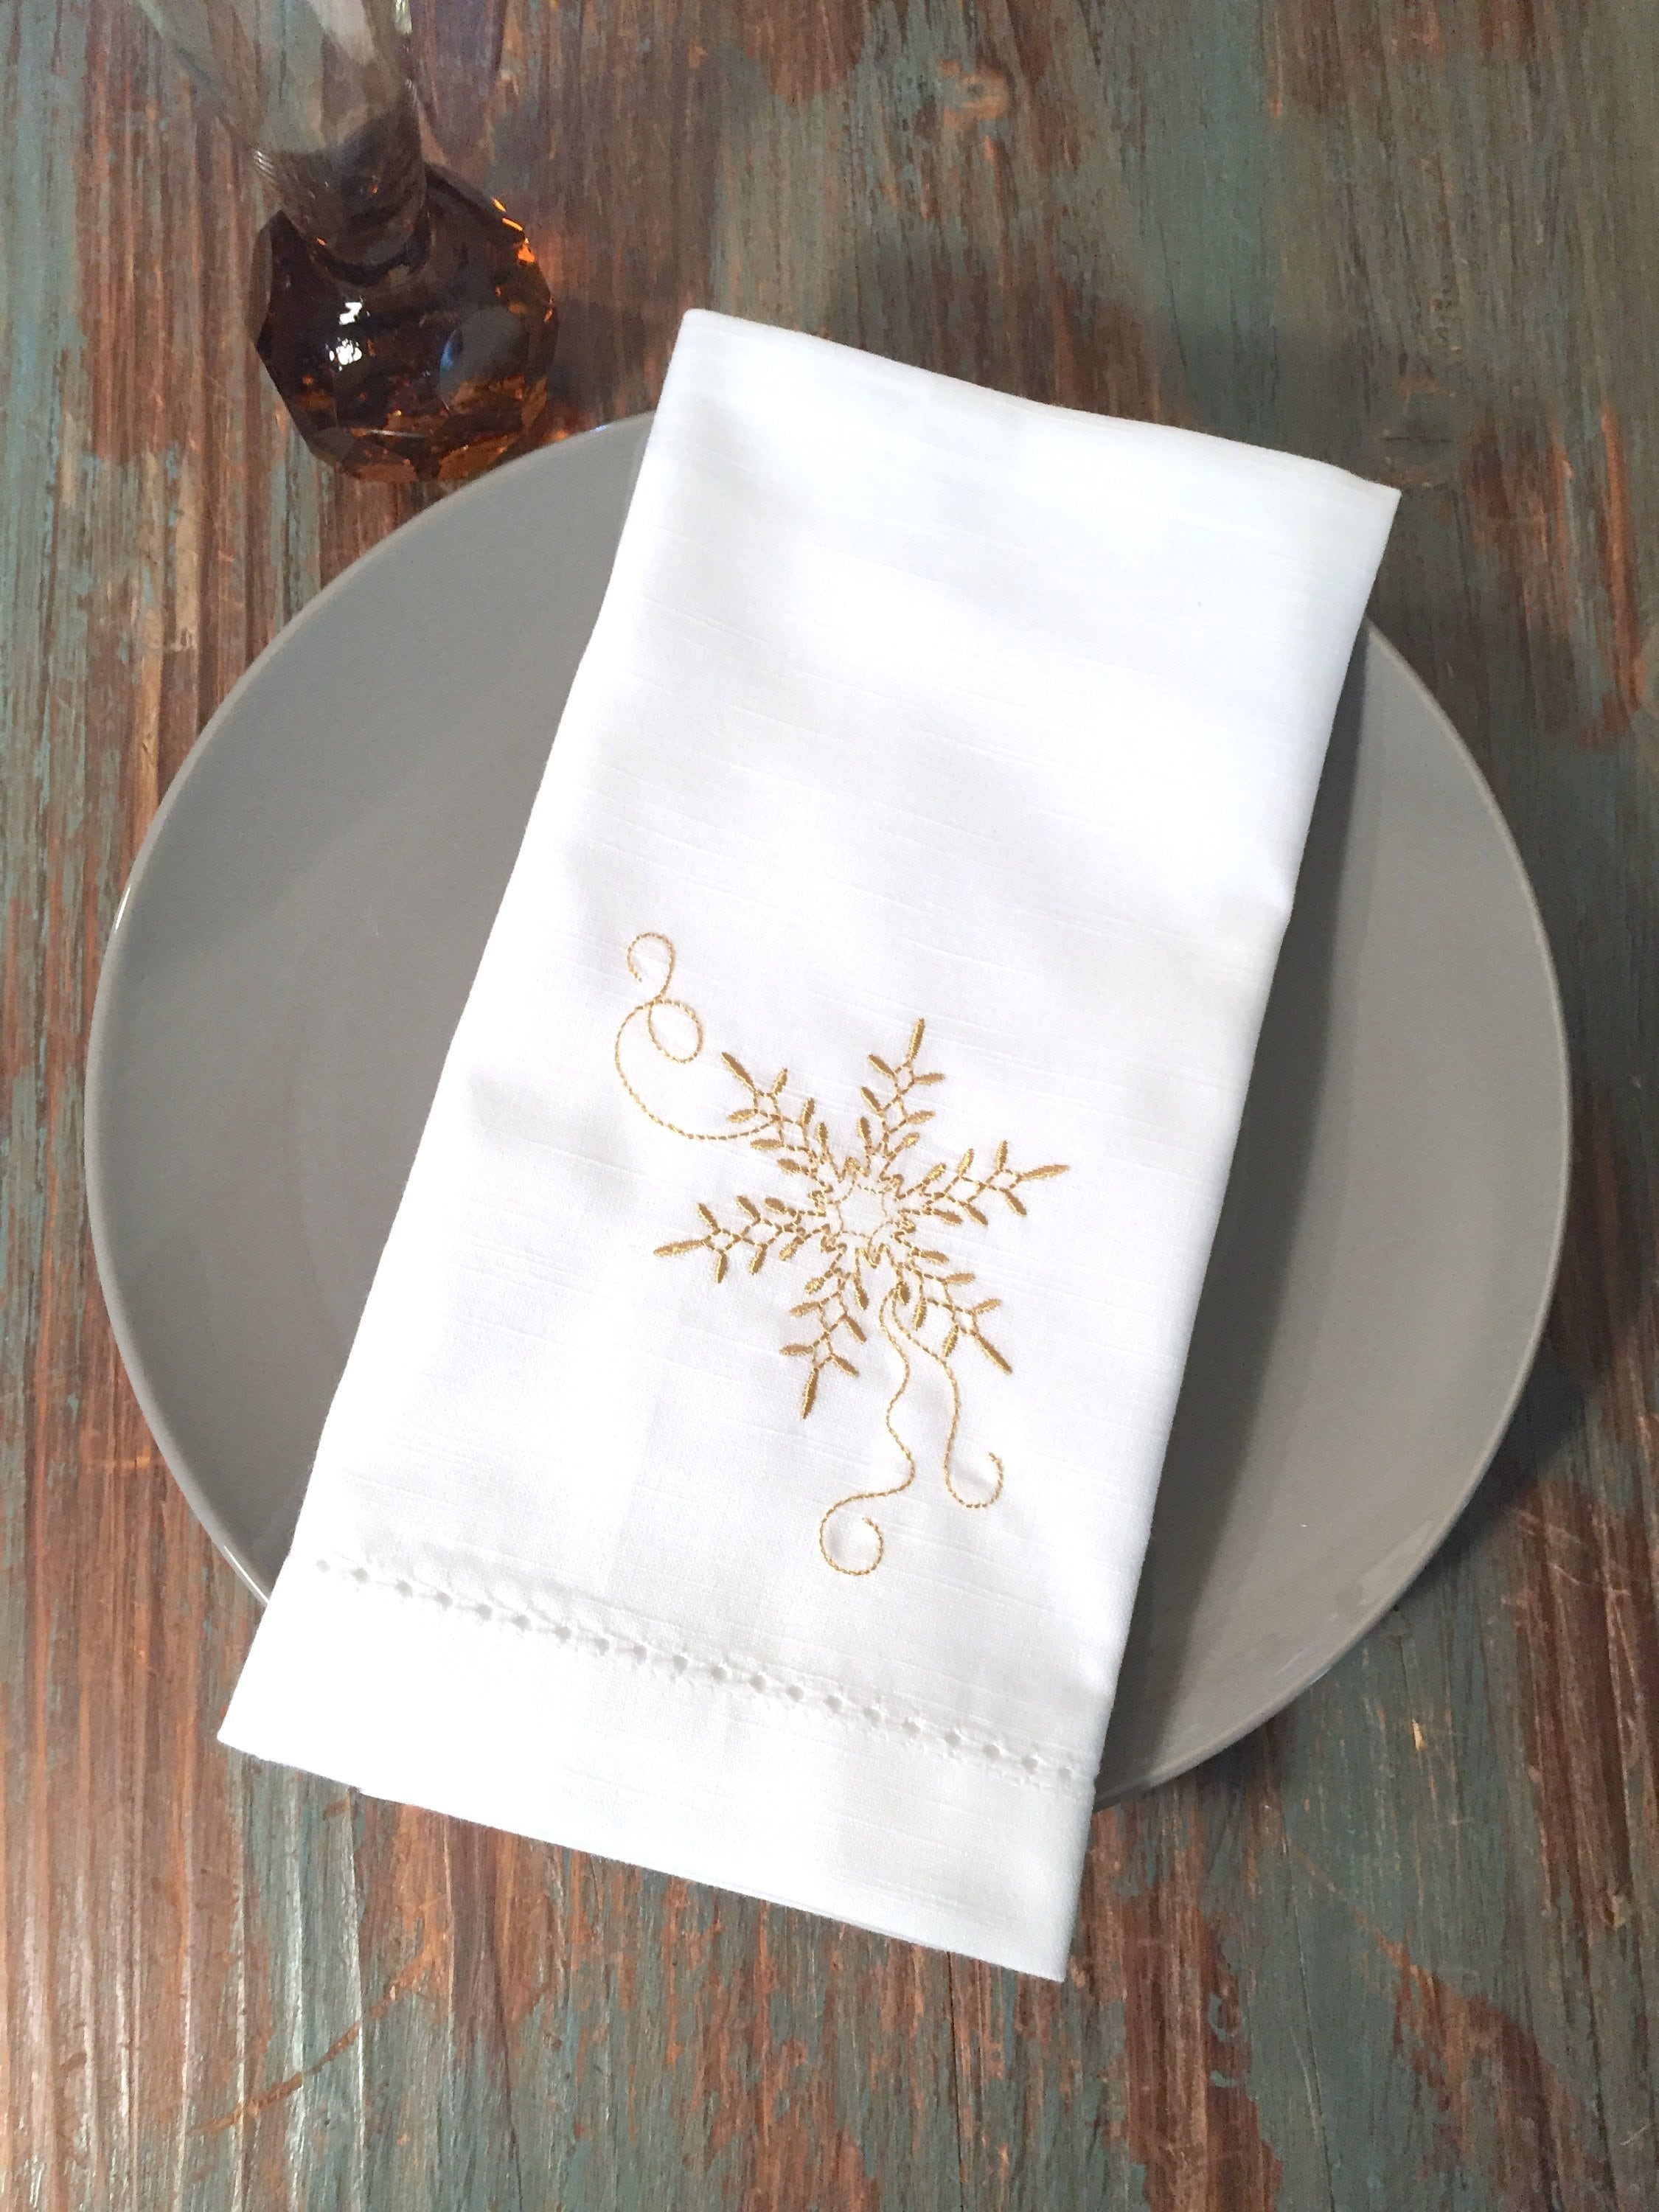 Servilletas de Navidad – Servilletas de tela de algodón de caramelo,  servilletas blancas 100% algodón, suaves y cómodas, servilletas  reutilizables